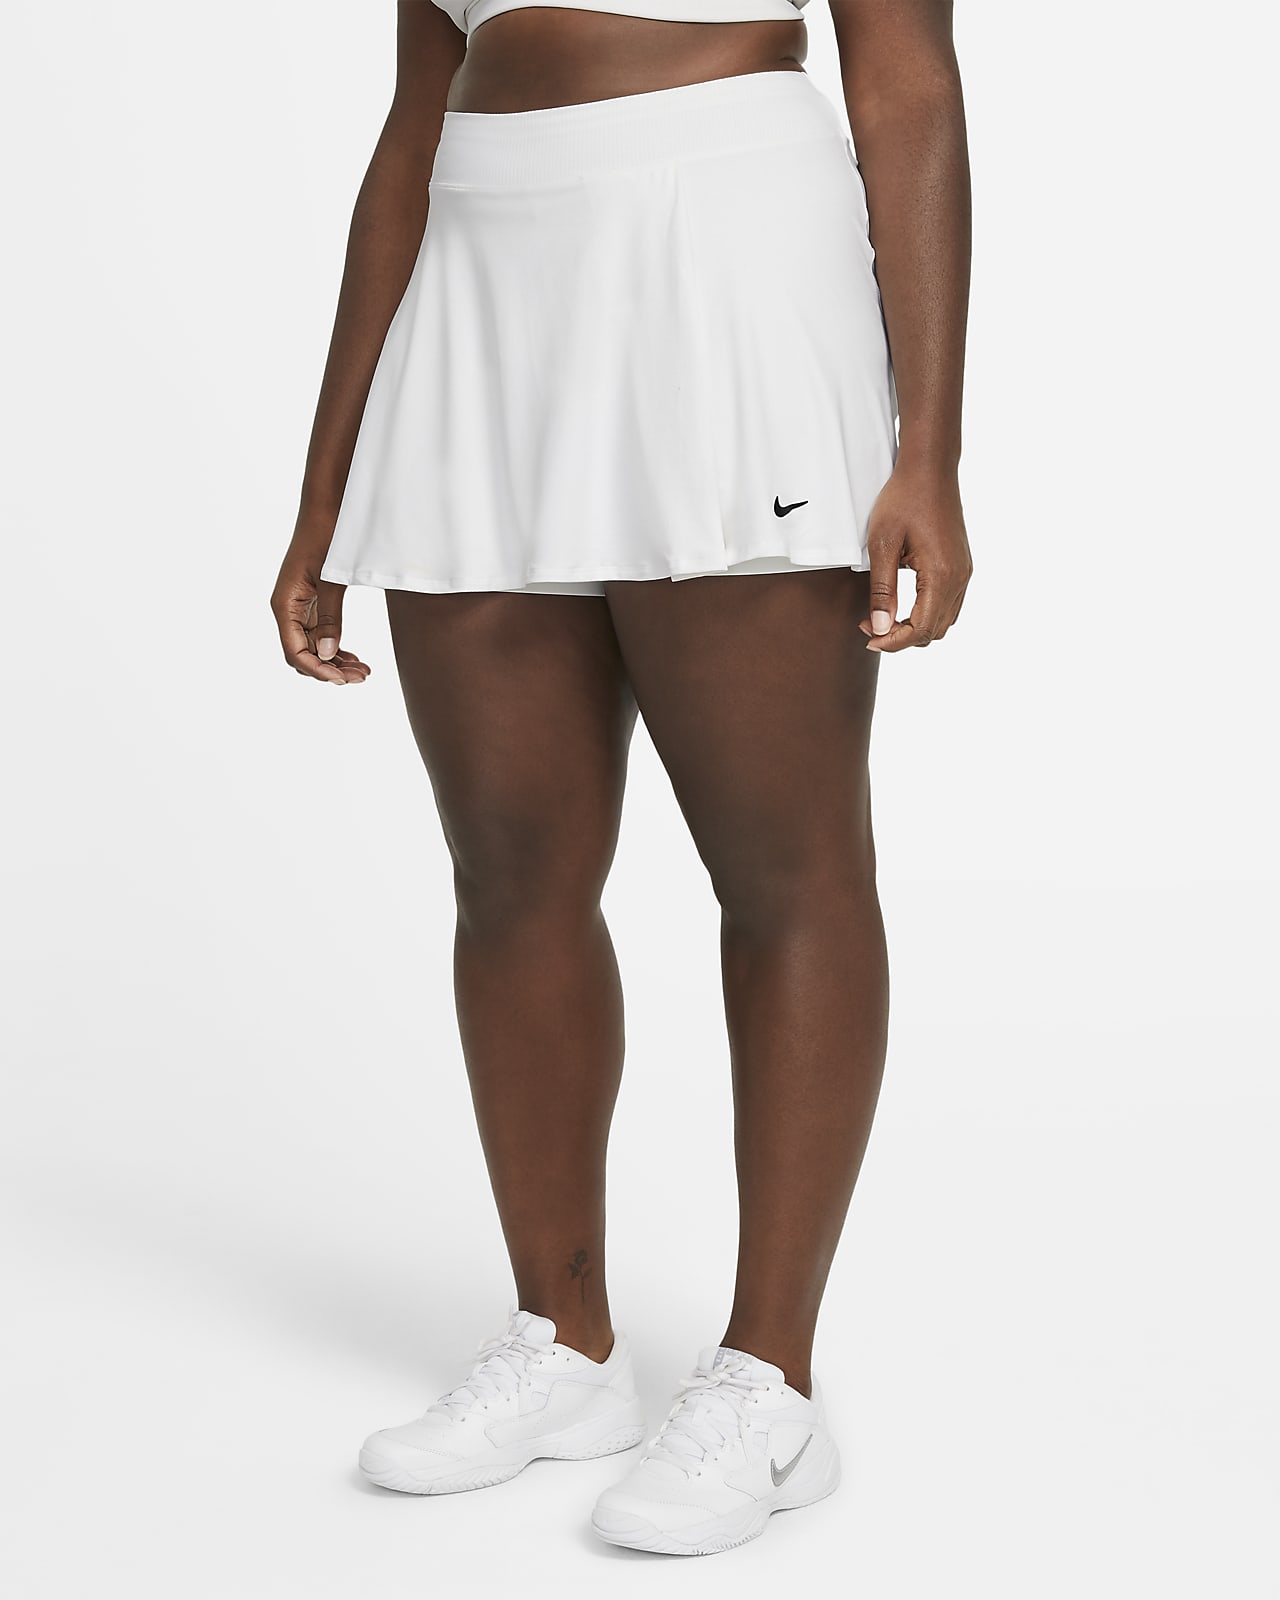 NikeCourt Victory Damen-Tennisrock (große Größe)